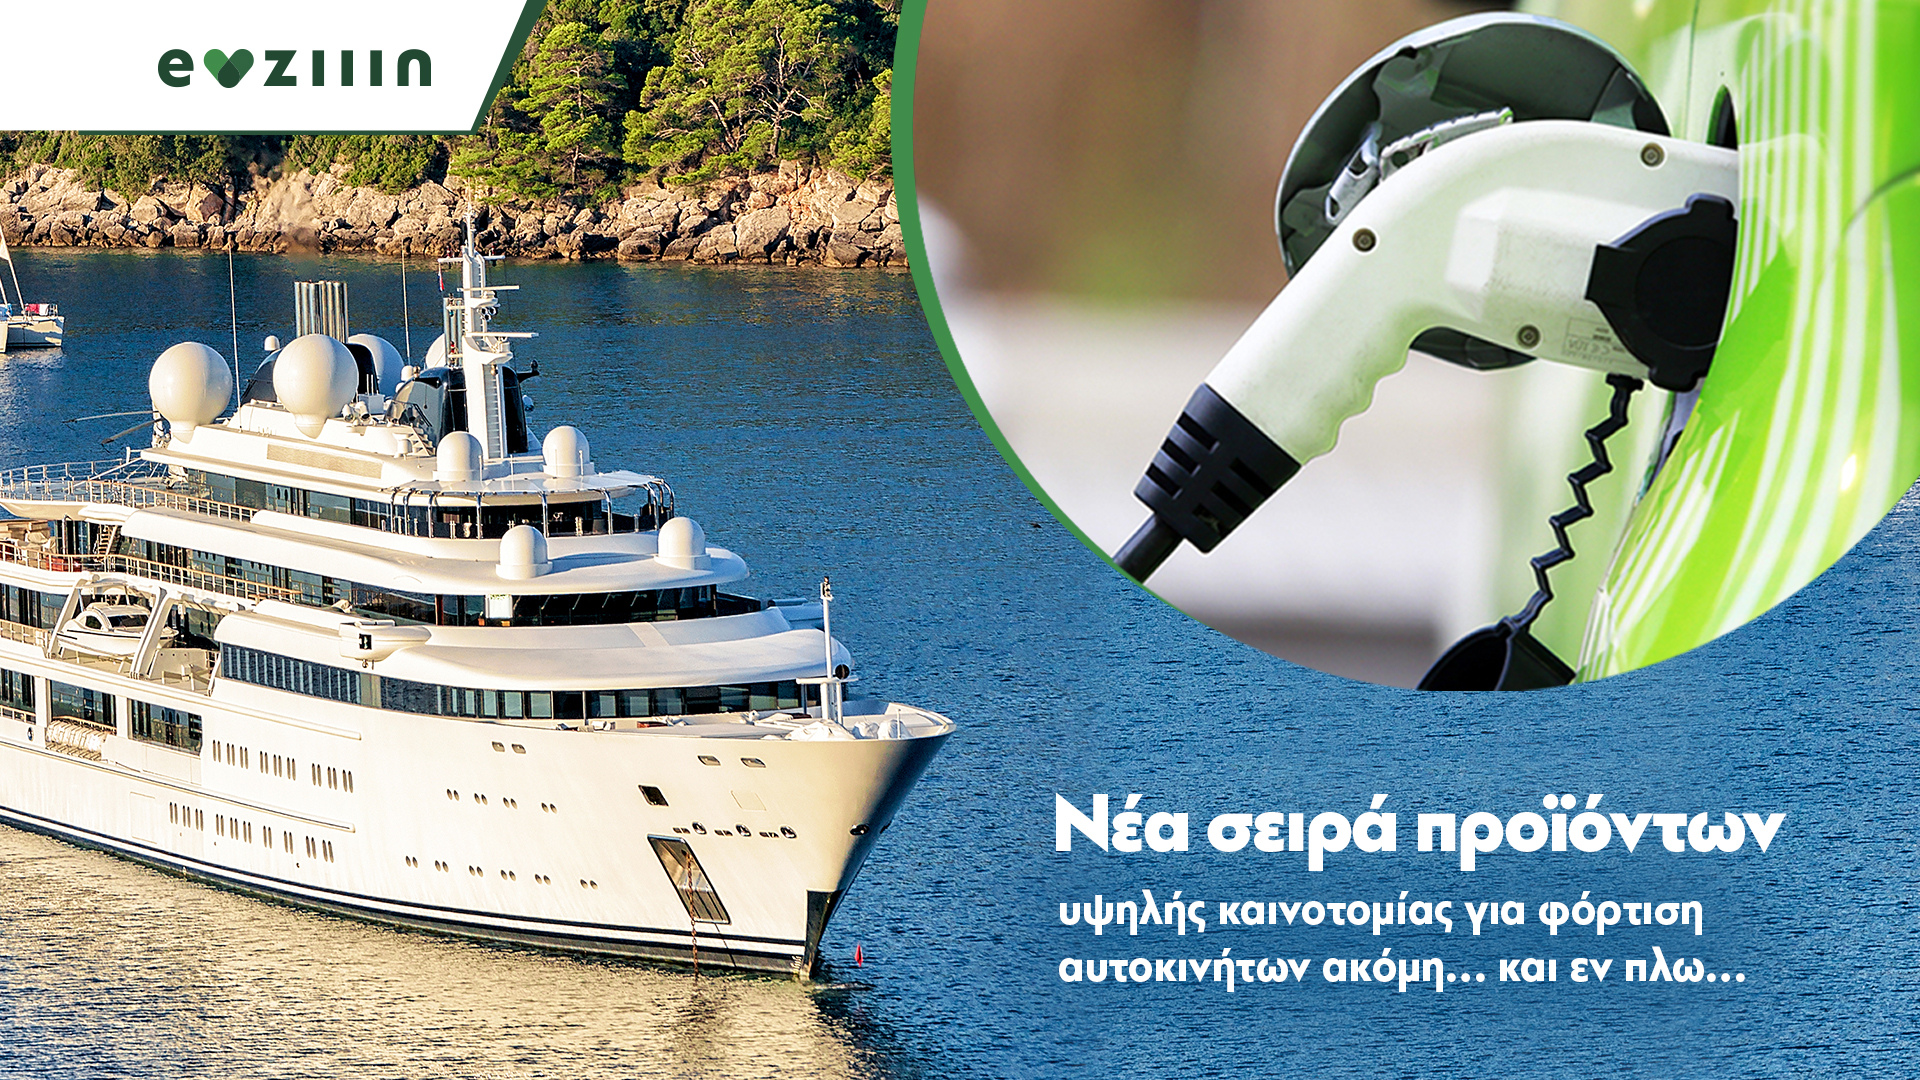 You are currently viewing Ποια είναι η εταιρεία που φέρνει φορτιστές ηλεκτρικών οχημάτων για τη θάλασσα;